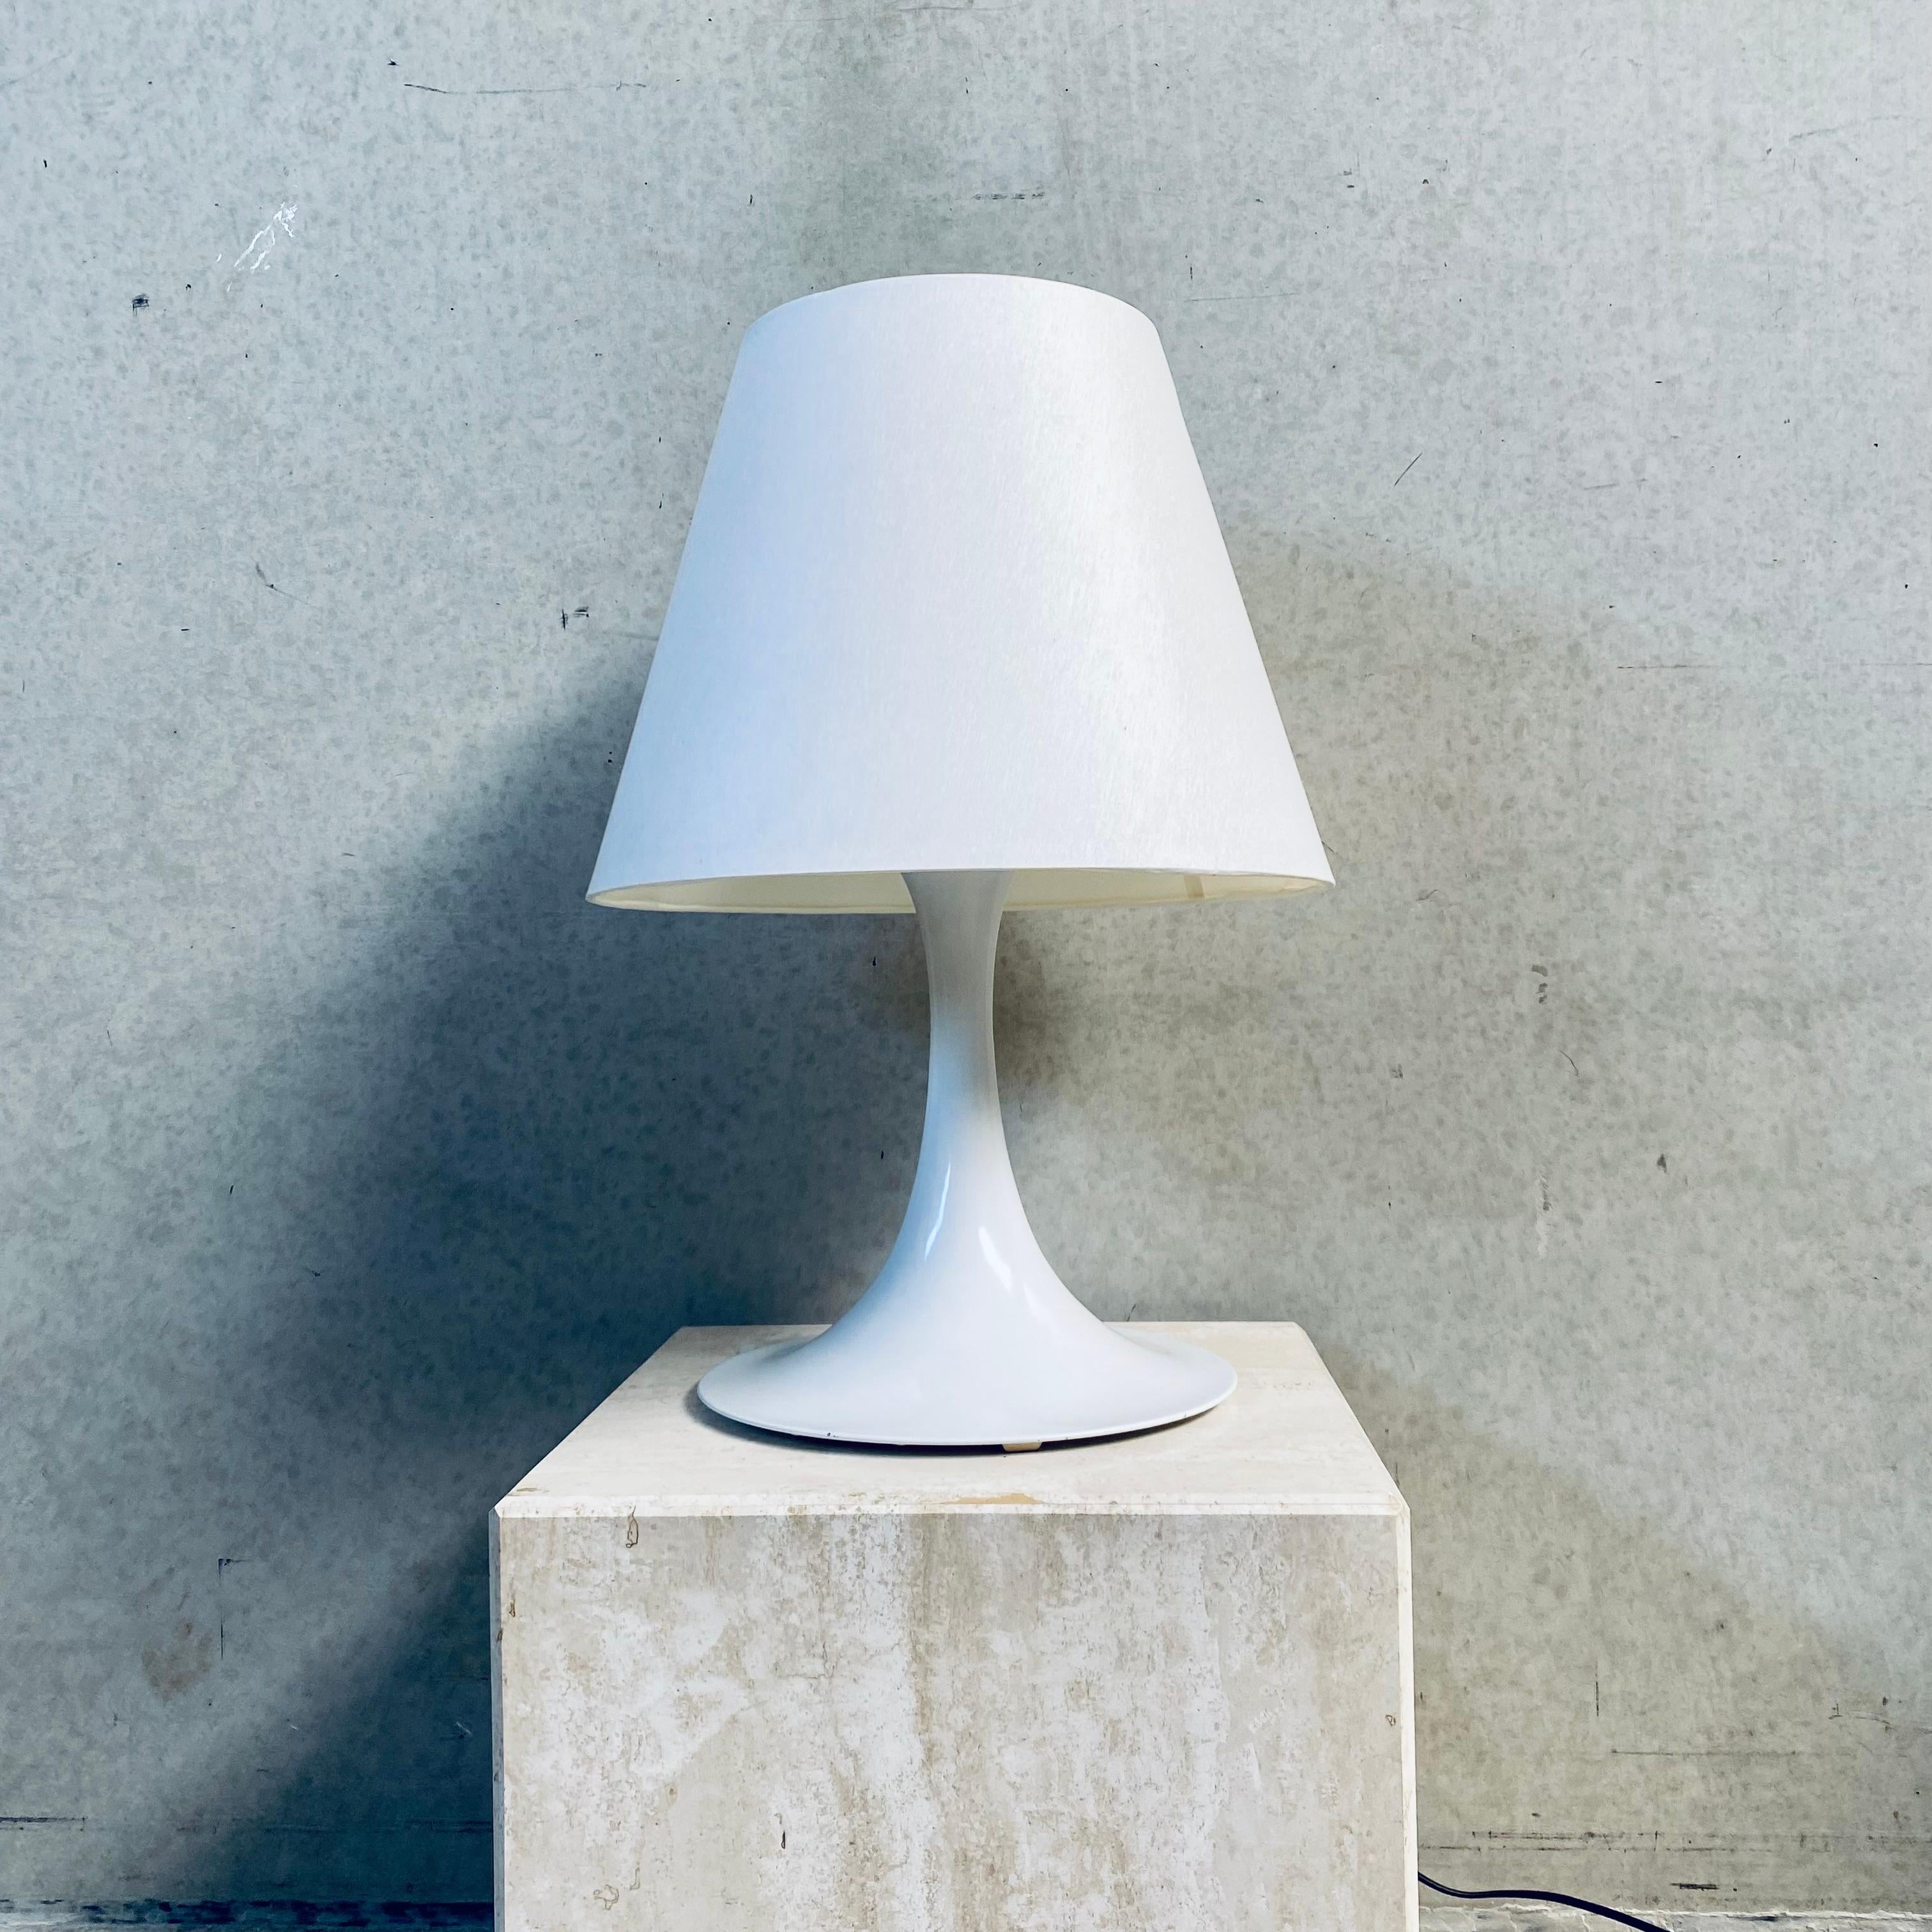 Elegant Mid-Century White Table Lamp by RAAK Amsterdam (lampe de table blanche du milieu du siècle)

Description : Élevez votre espace avec le charme intemporel de la lampe de table blanche du milieu du siècle, modèle D2128, méticuleusement